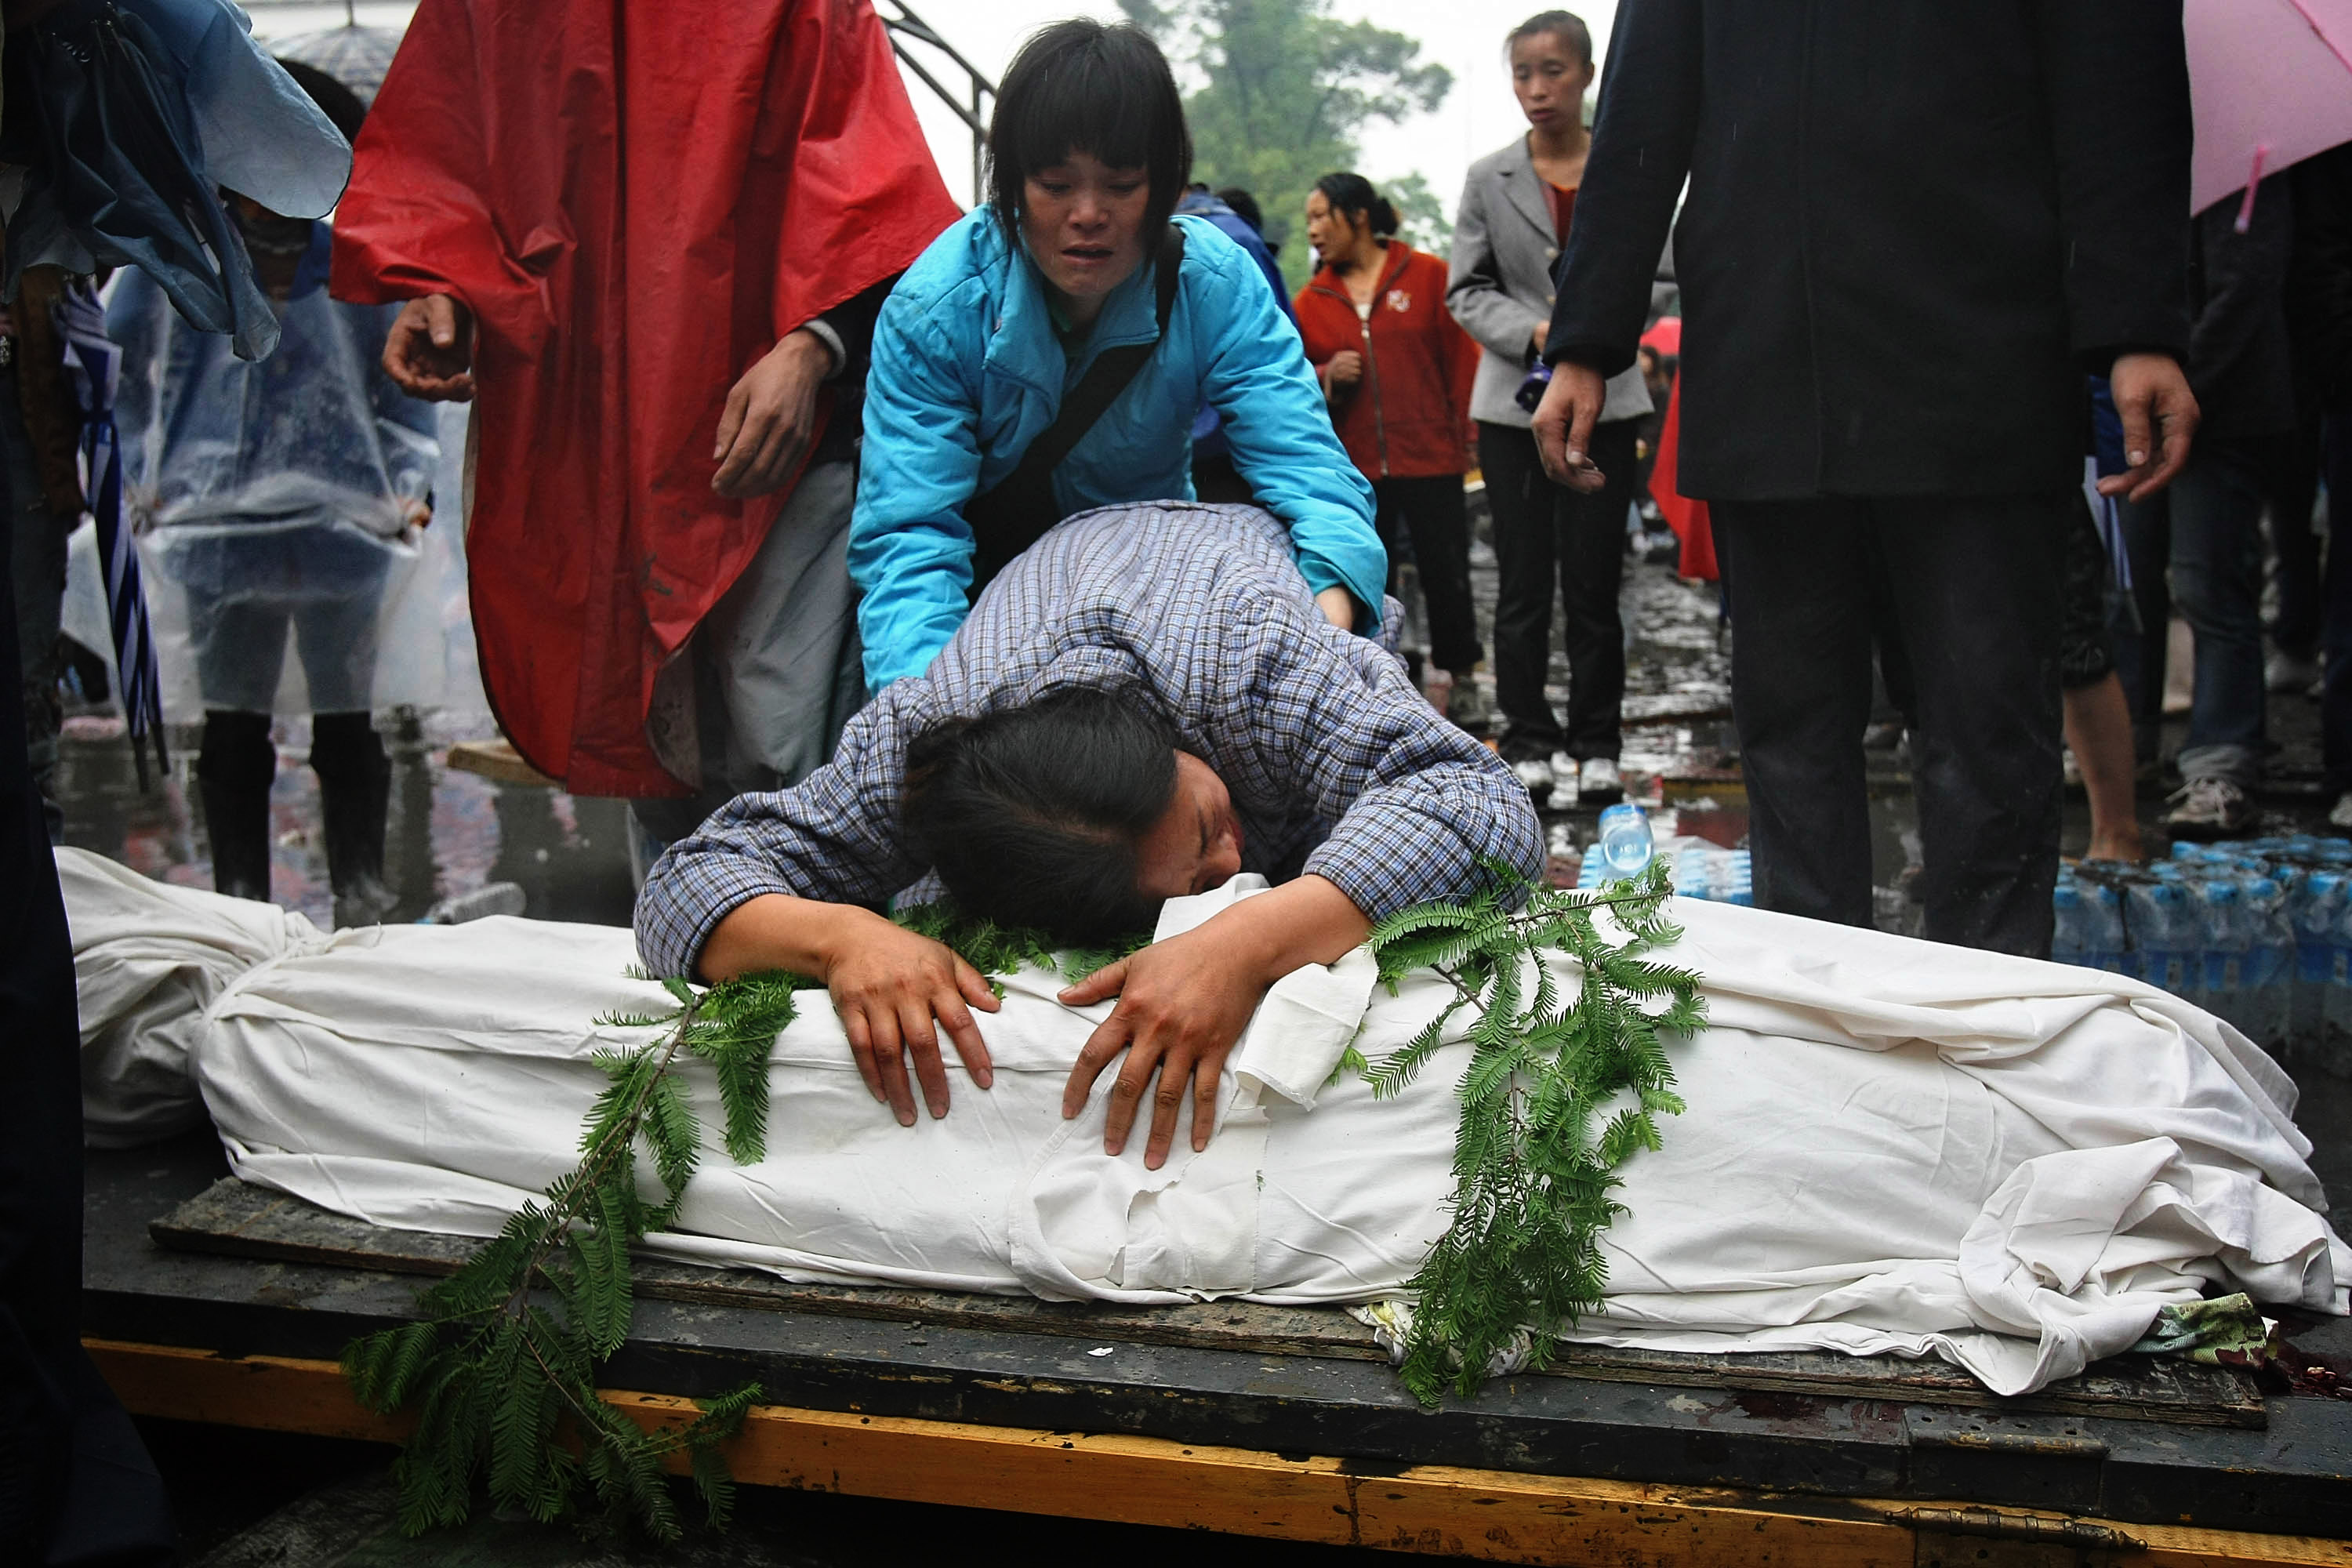 Fackellauf wird trotz Erdbeben in Sichuan fortgesetzt